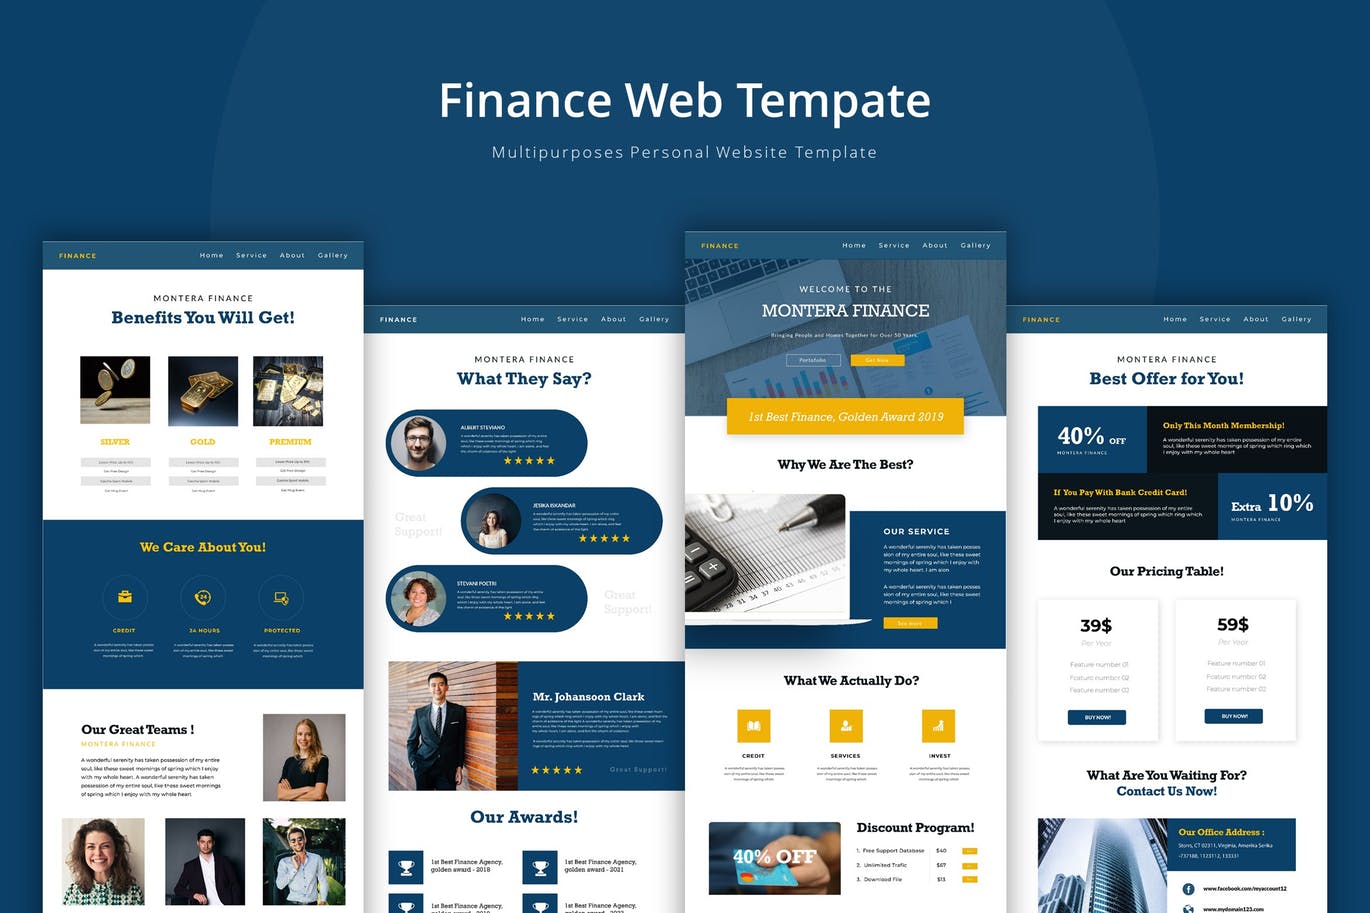 金融理财公司官网企业网站设计素材库精选模板 Finance Web Template插图